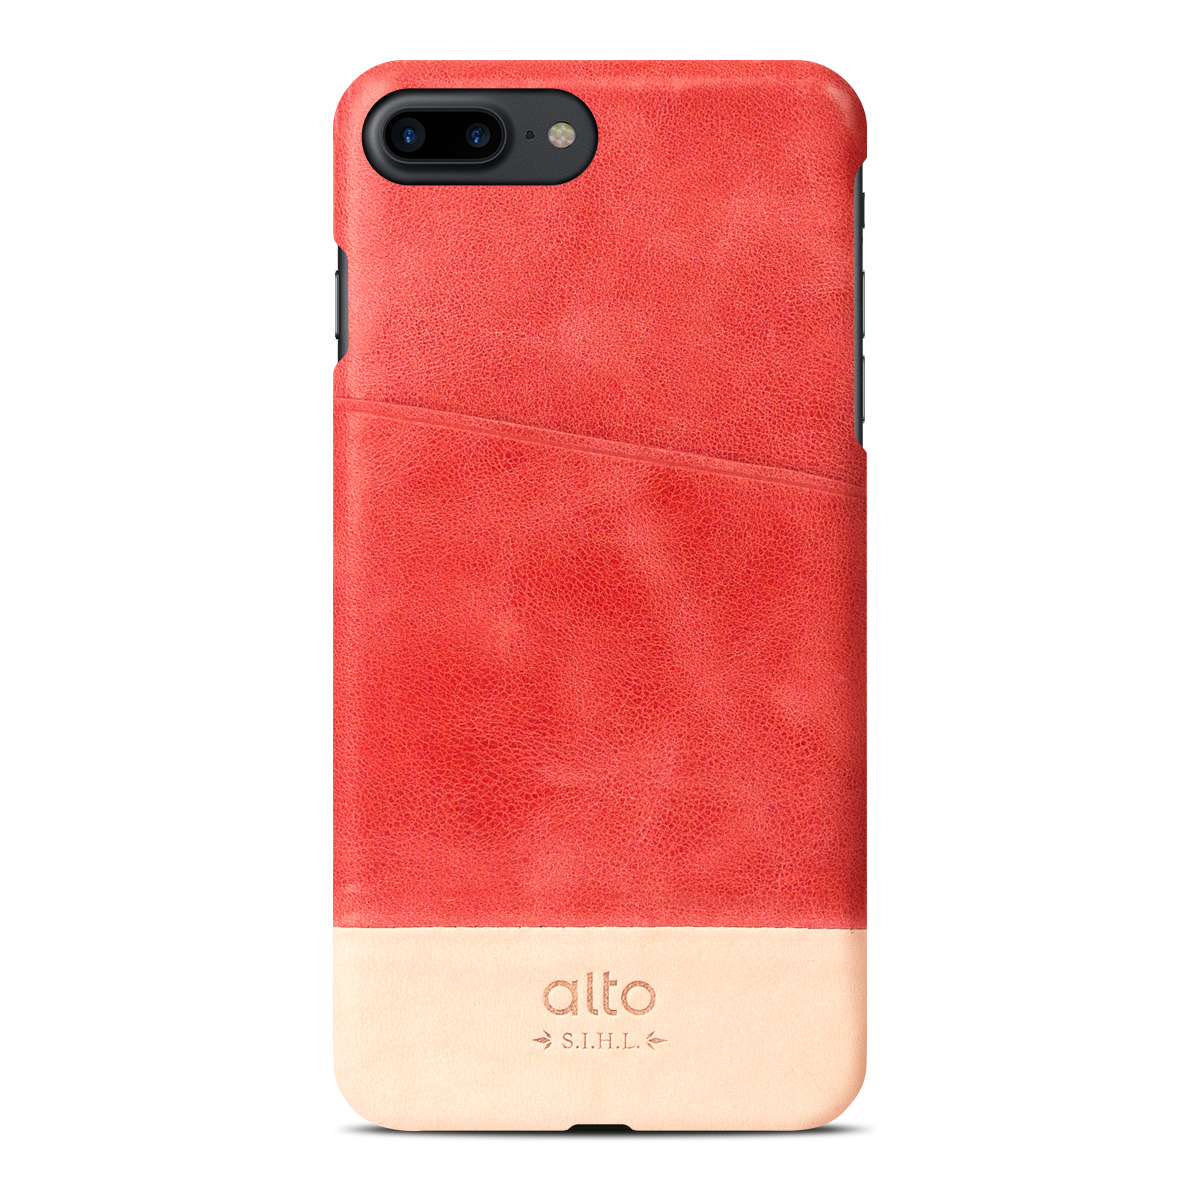 alto iPhone 7plus 真皮手機殼背蓋 Original (Coral/Original)